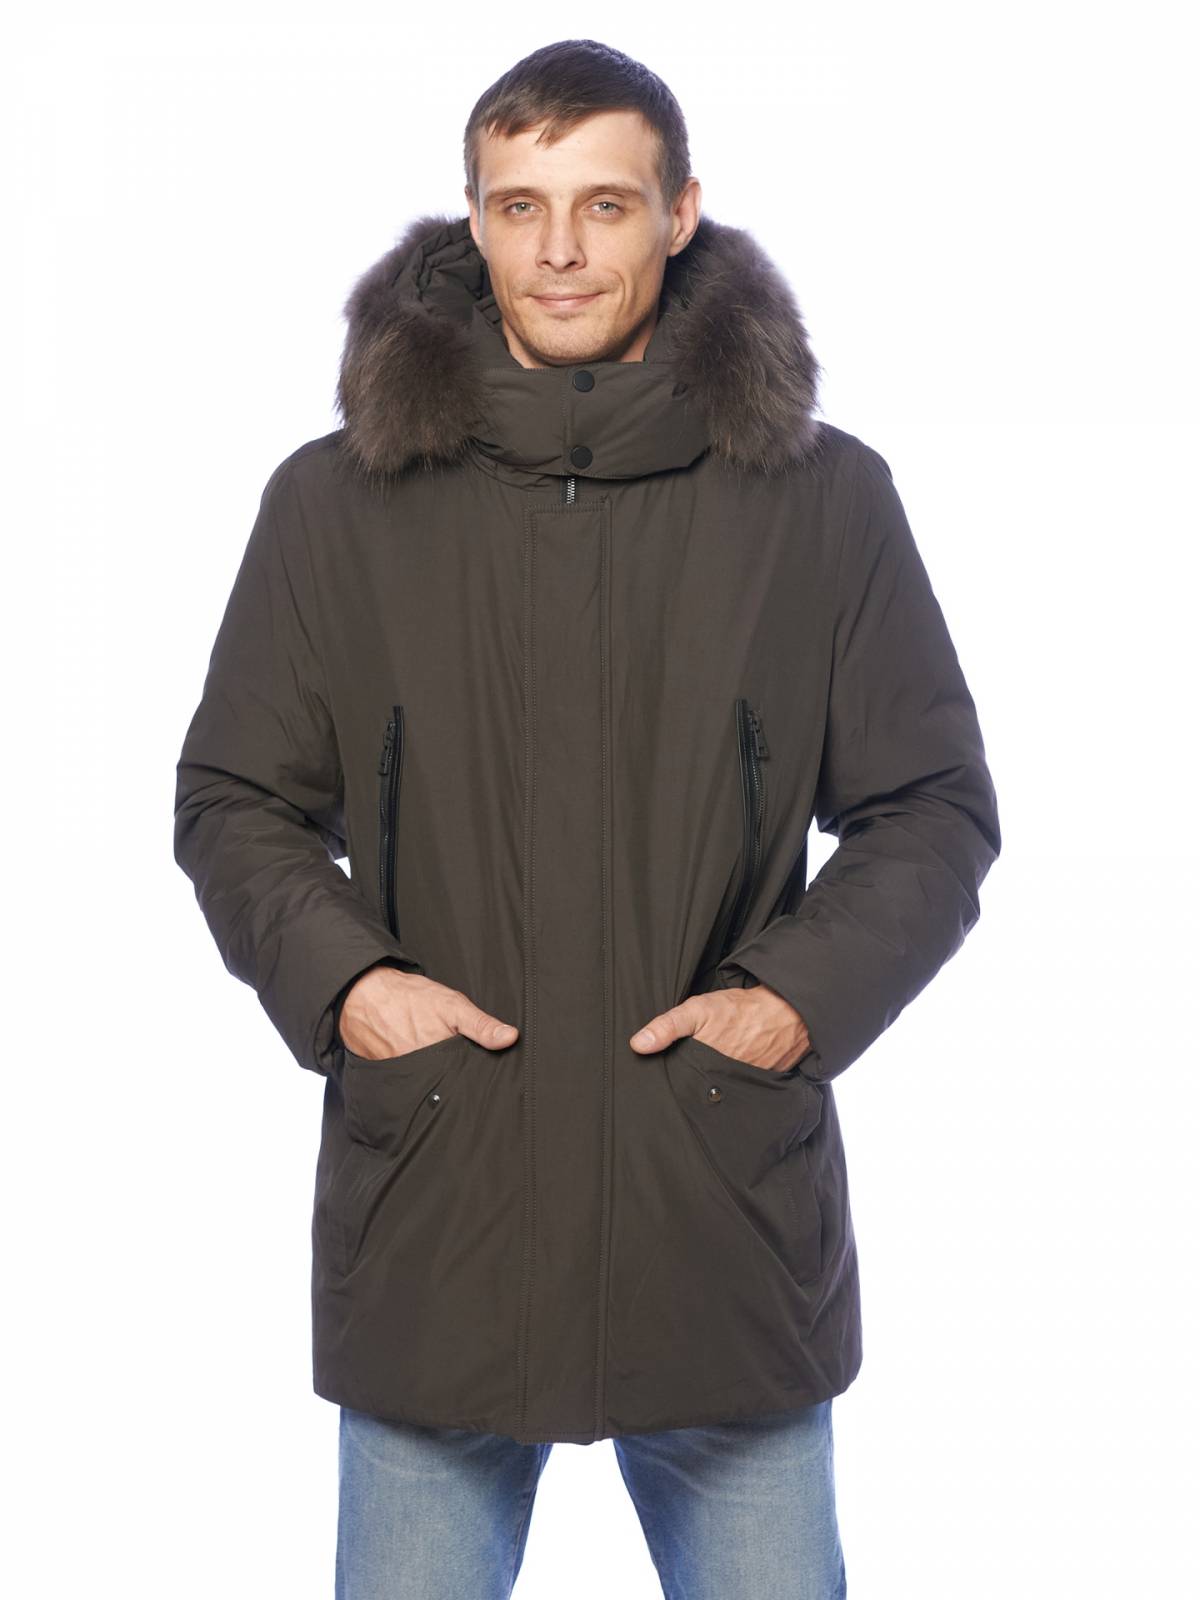 Зимняя куртка мужская Clasna 3577 коричневая 54 RU